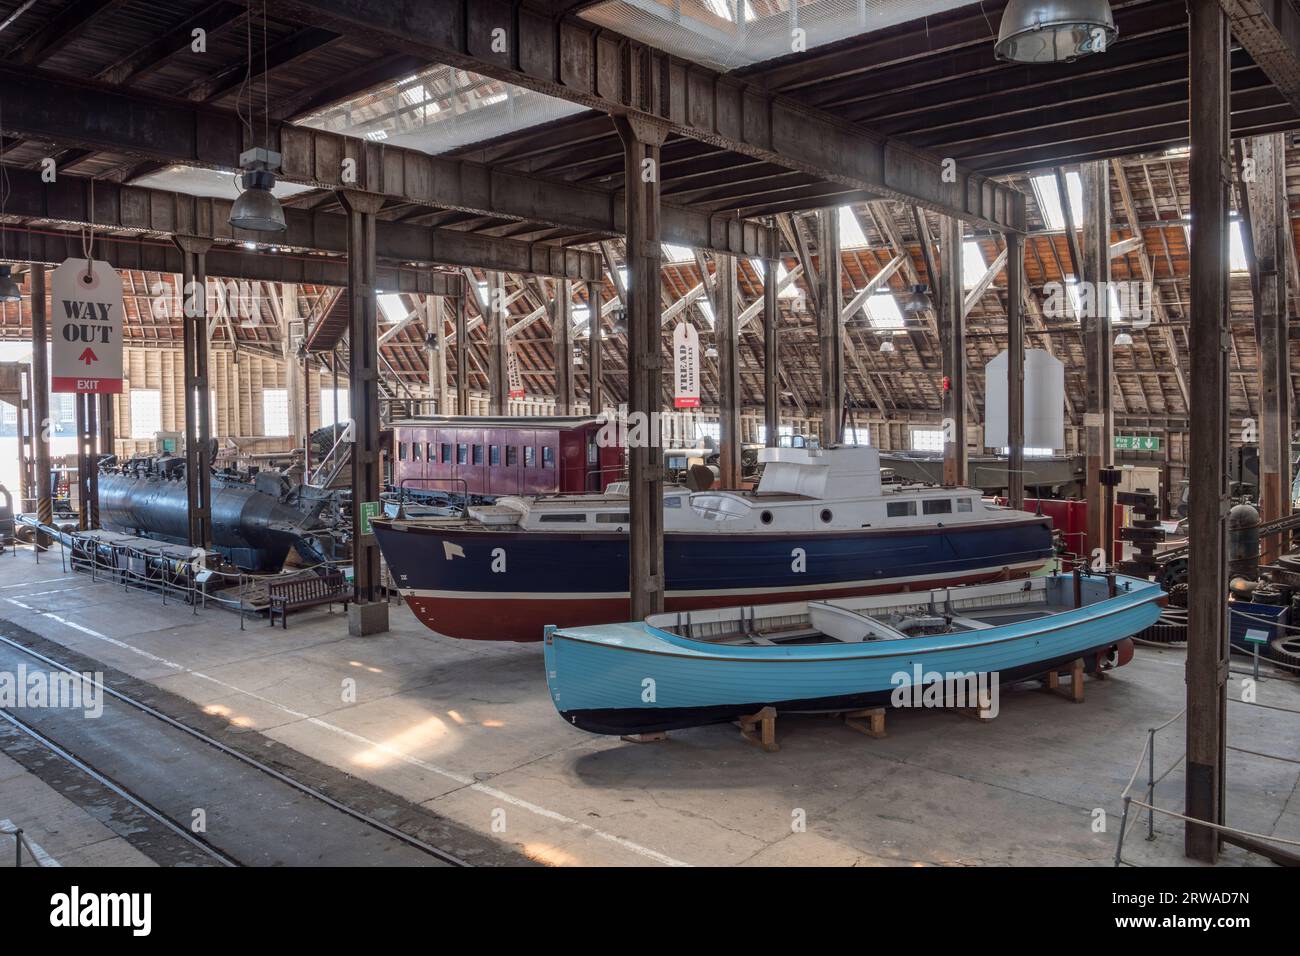 Vue générale à l'intérieur du Big Space, chantier naval historique de Chatham, Kent, Royaume-Uni. Banque D'Images